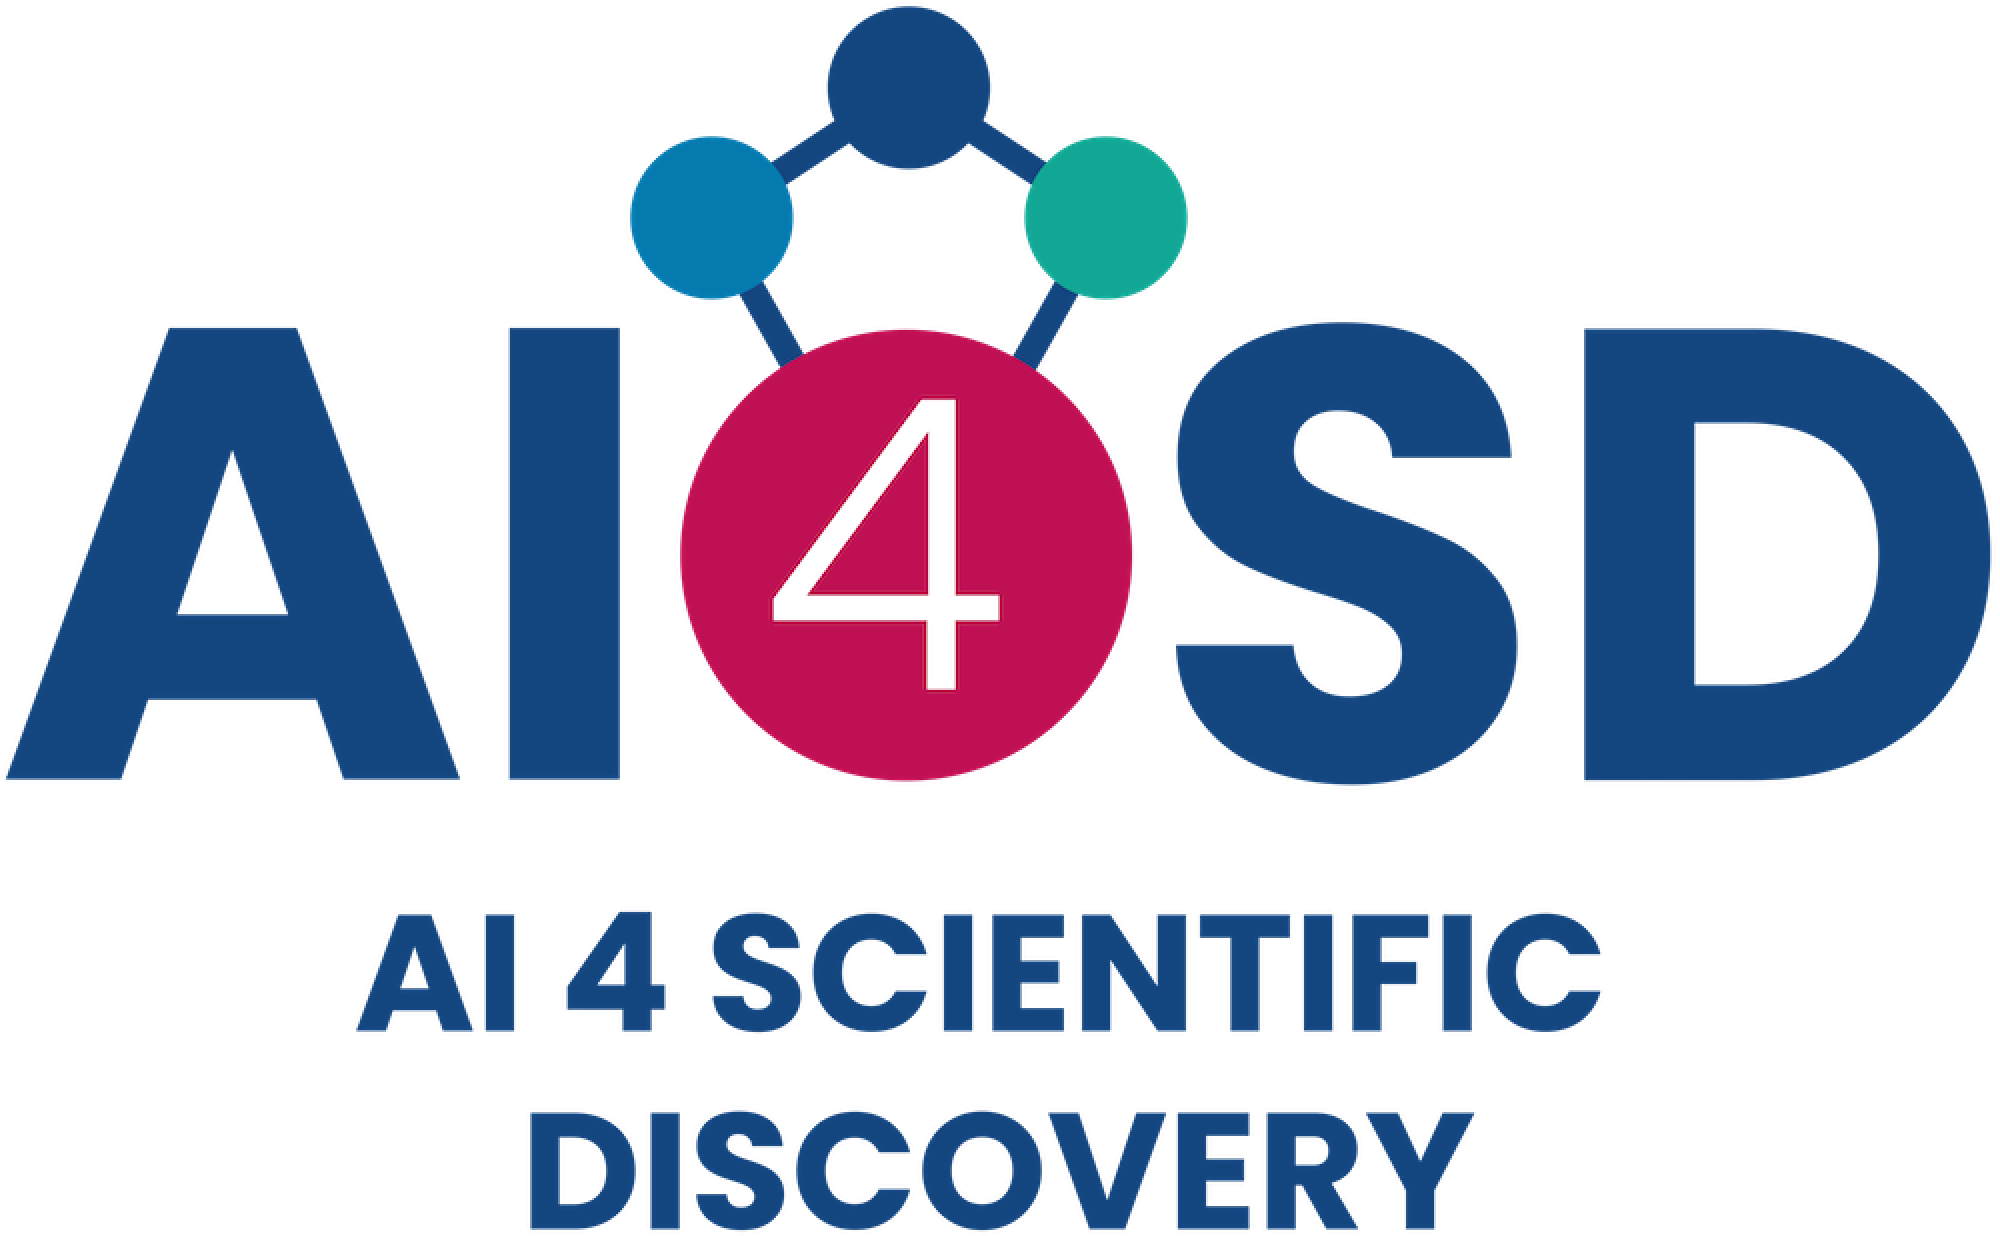 AI 4 Scientific Discovery